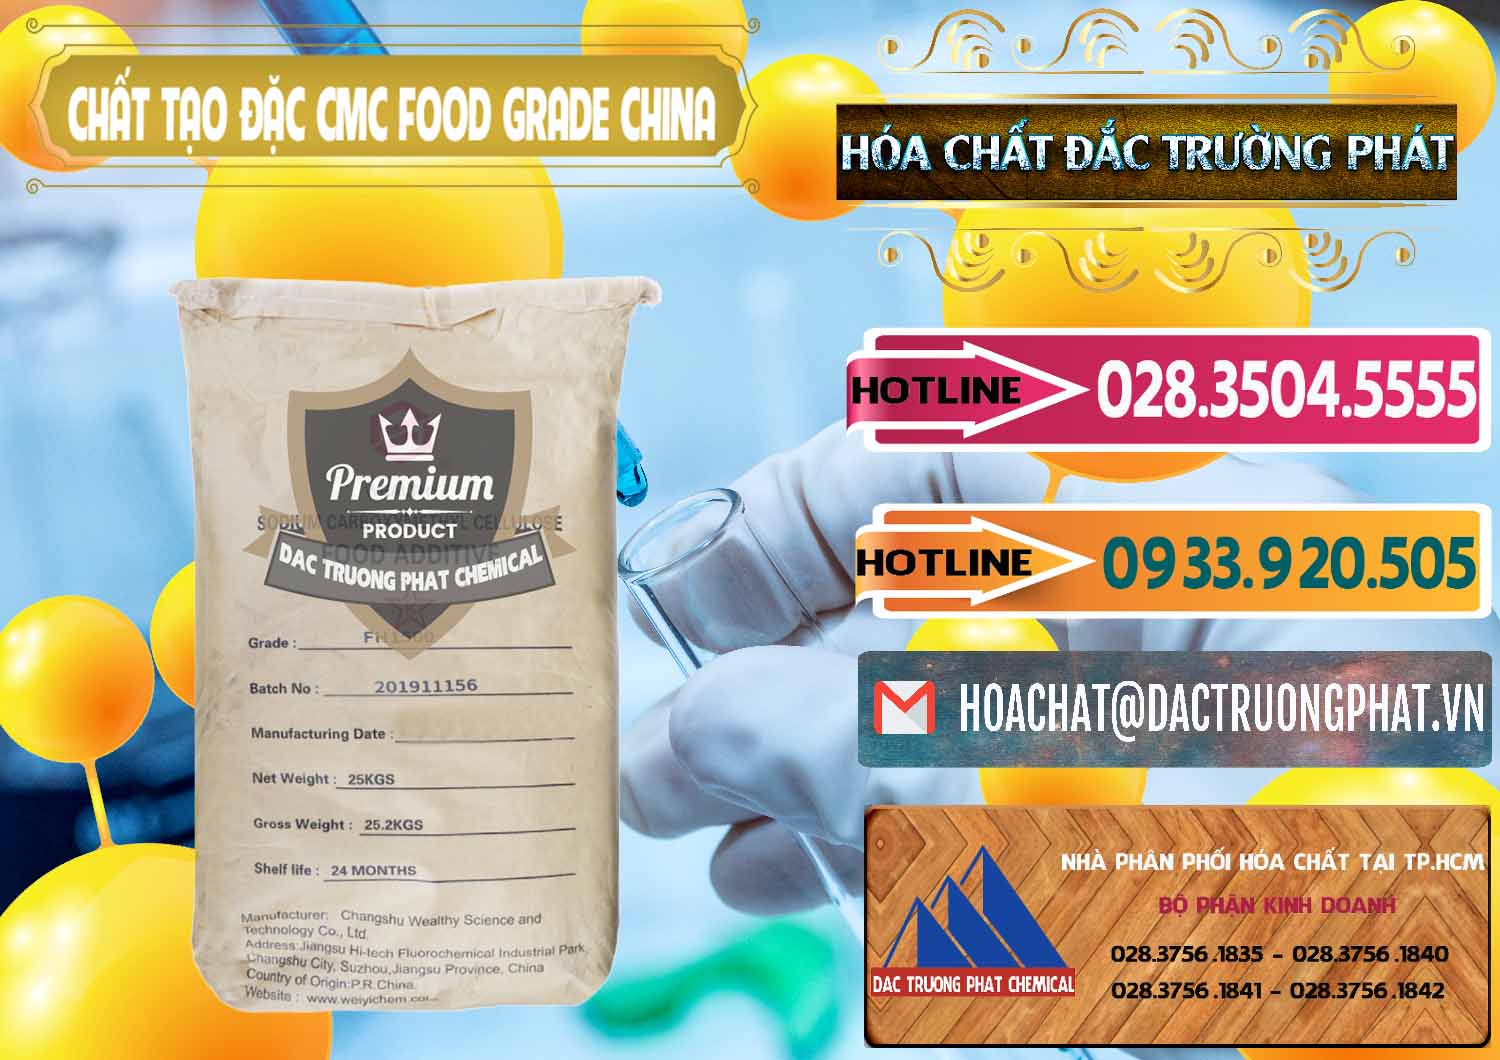 Cty chuyên cung cấp ( bán ) Chất Tạo Đặc CMC Wealthy Food Grade Trung Quốc China - 0426 - Cty chuyên phân phối ( cung ứng ) hóa chất tại TP.HCM - dactruongphat.vn